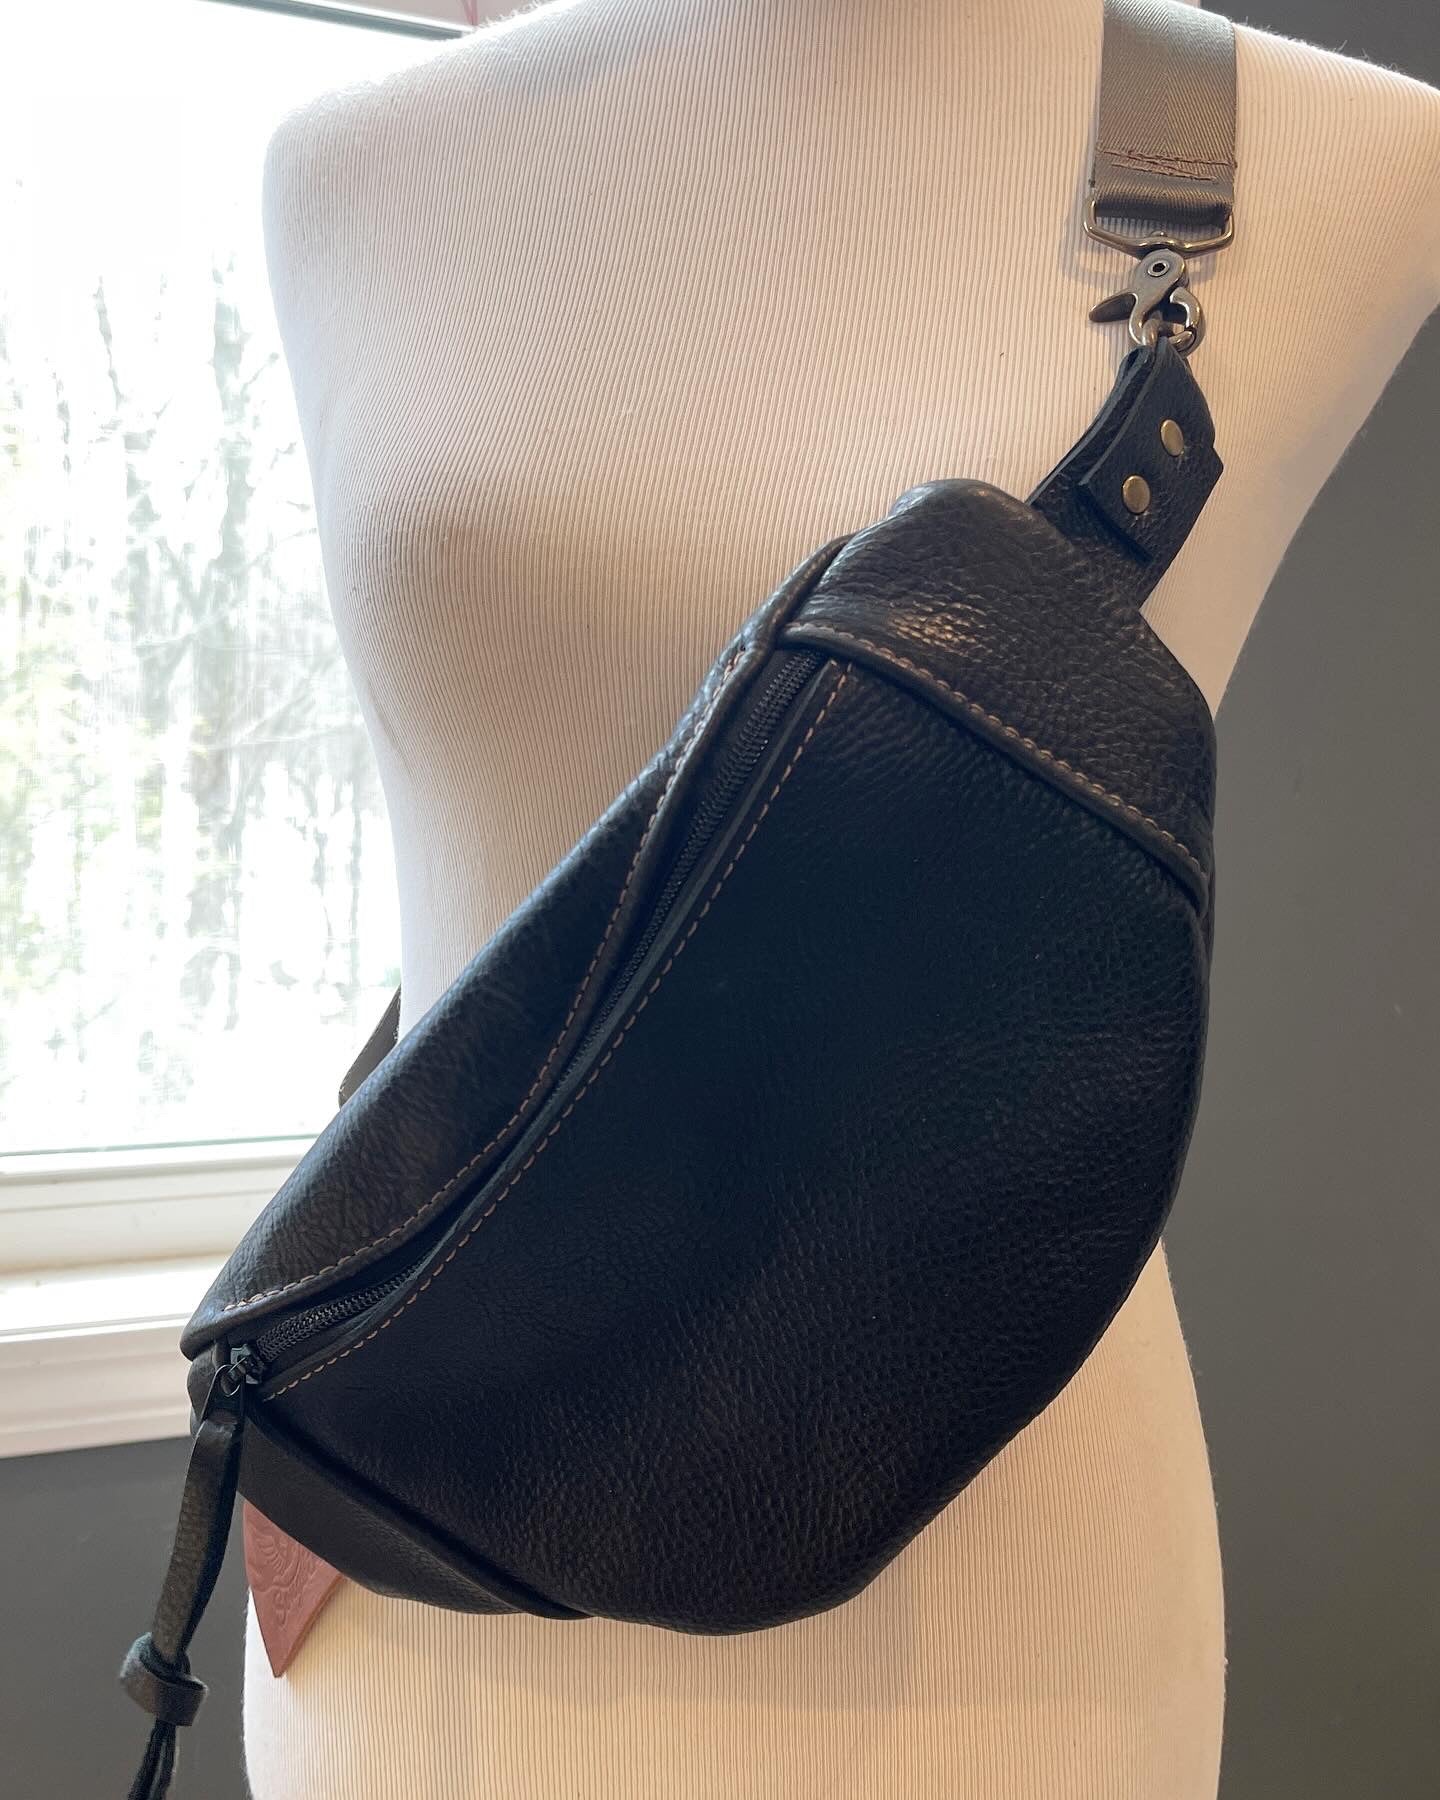 Black Pebbled Leather Sling Bag